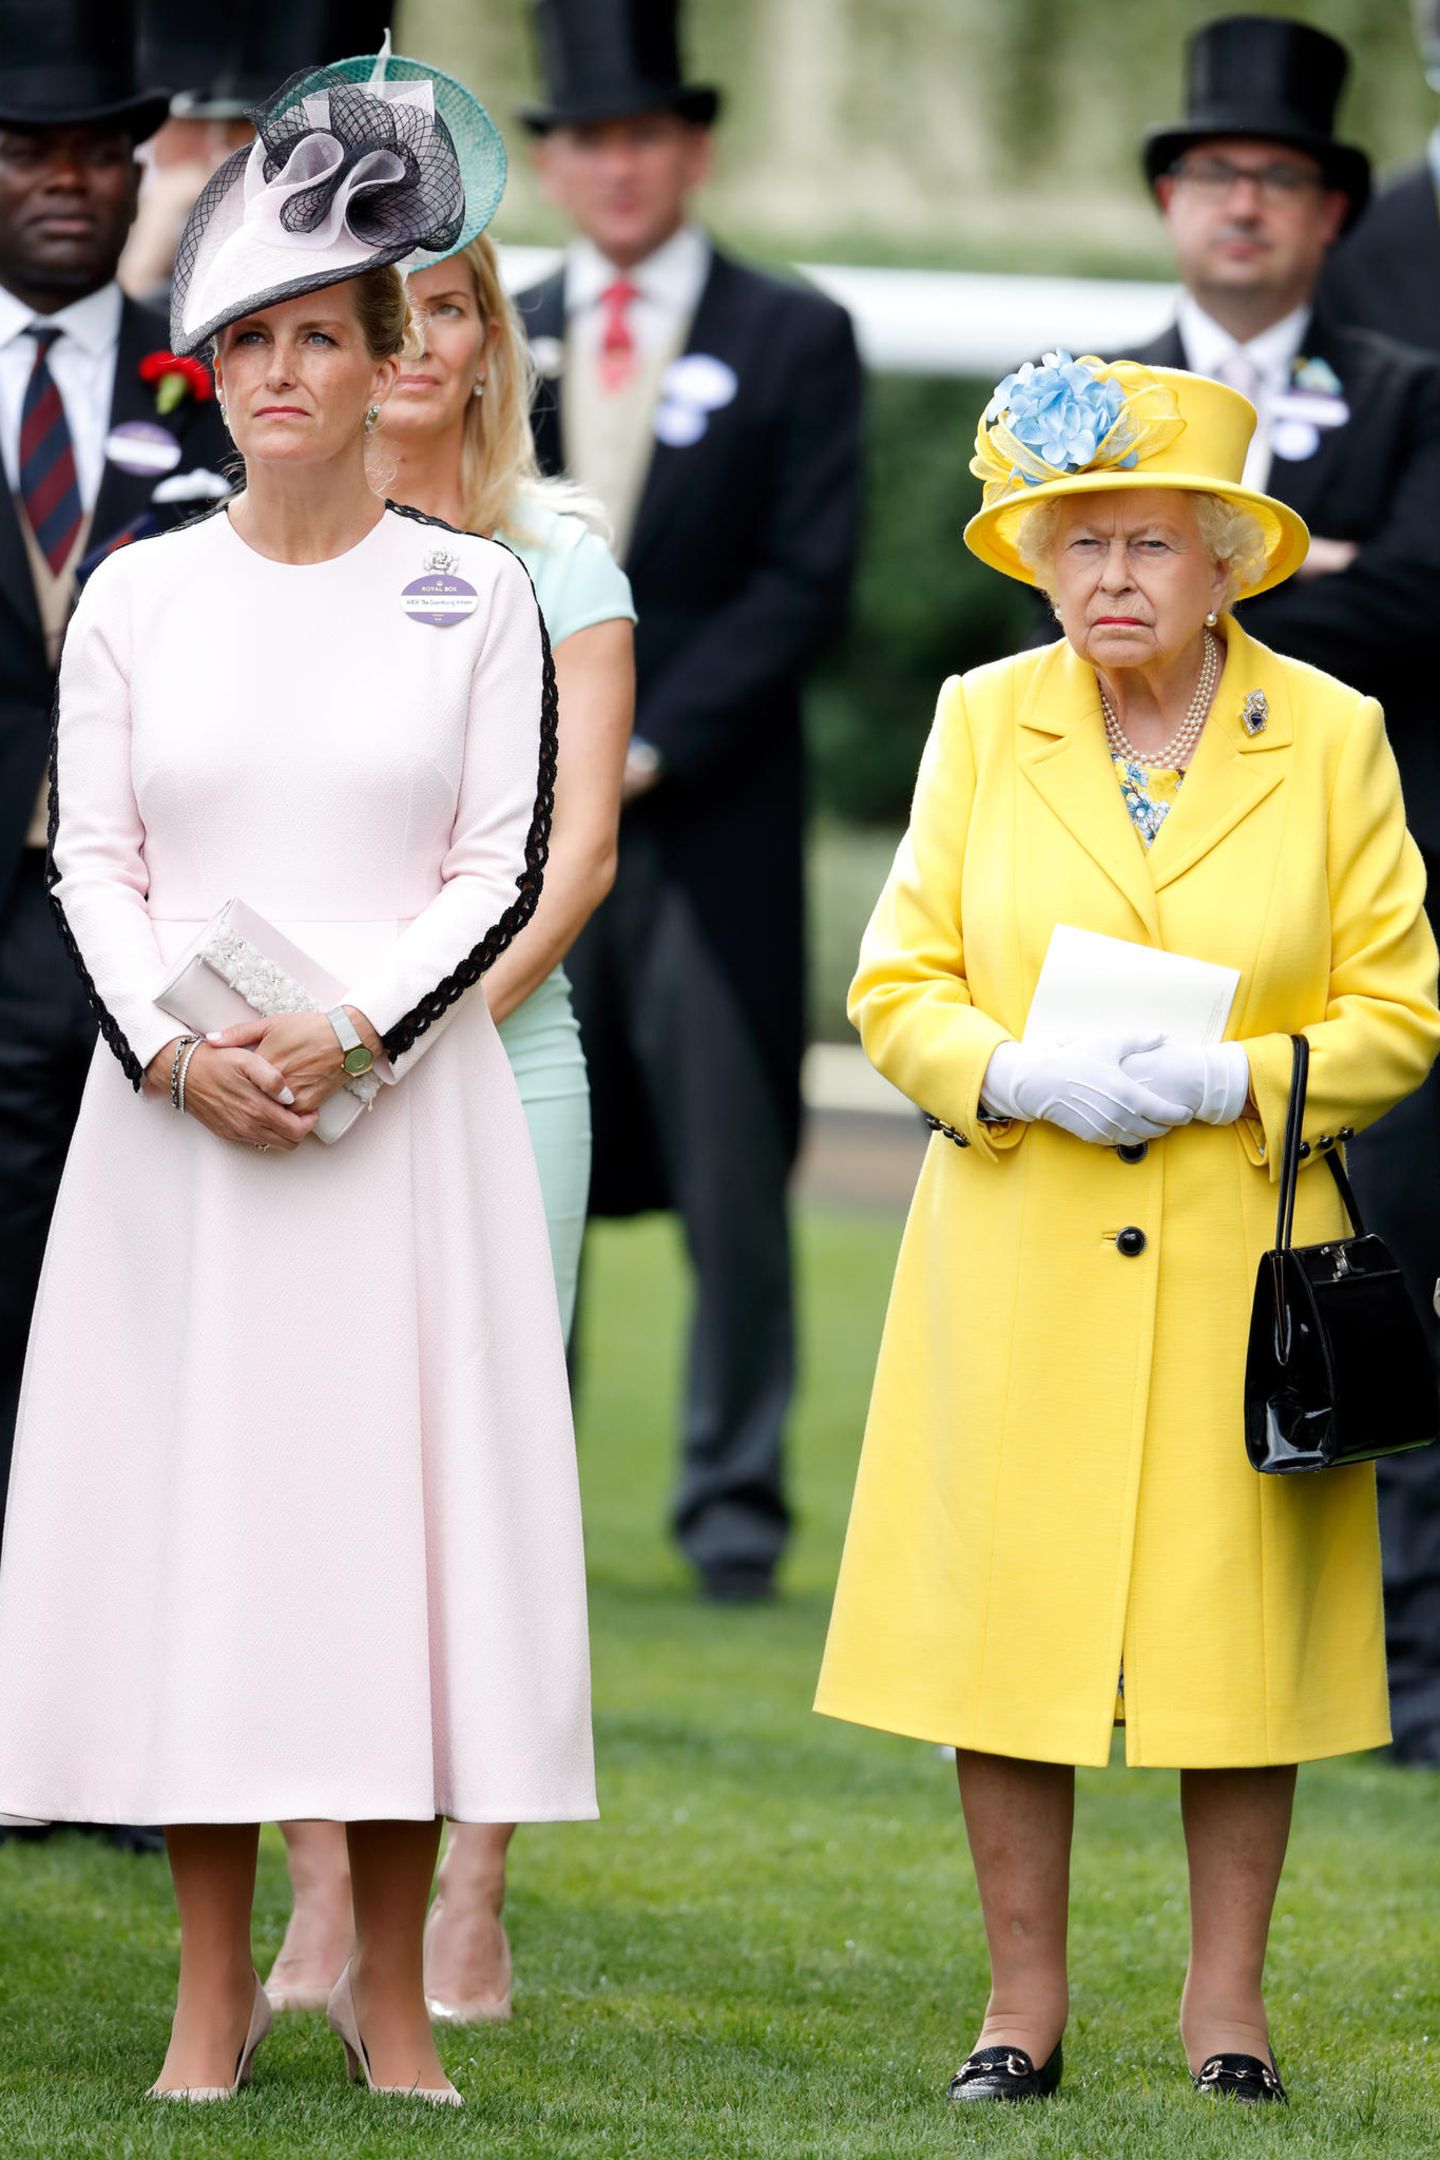 An Tag eins in Ascot 2018 entscheidet sich Gräfin Sophie für ein hellrosa wadenlanges Kleid, mit kunstvollen Applikationen am Ärmel. Ein passender farblicher Kontrast zu ihrer Schwiegermutter Queen Elisabeth, die sich für ein knalliges Zitronengelb entschieden hat. 